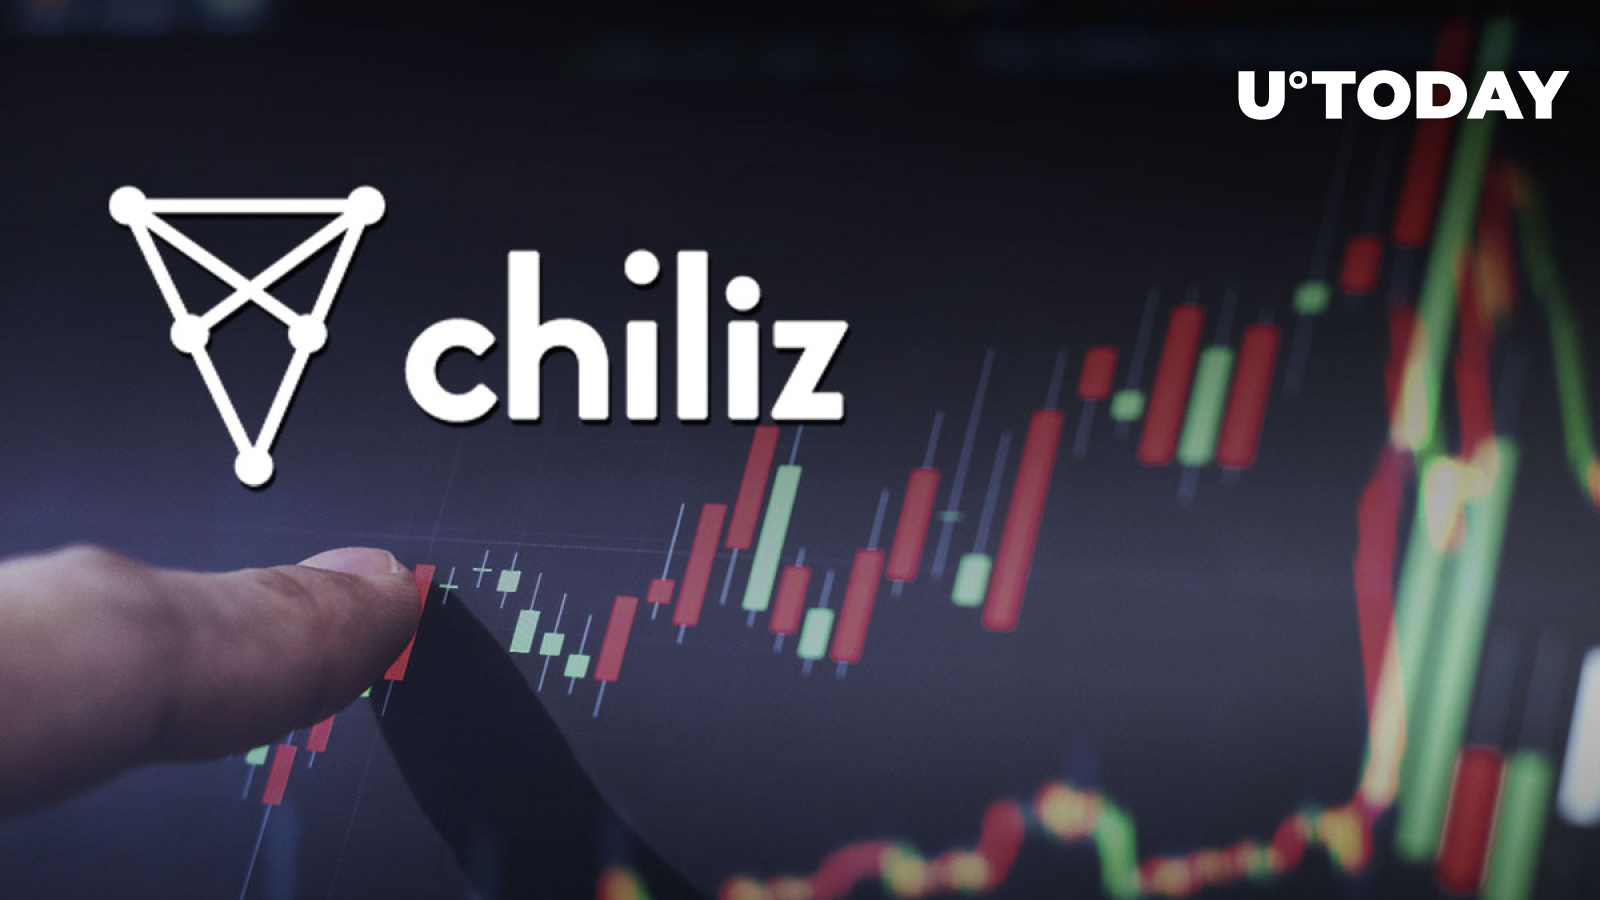 Chiliz 15% افزایش یافته است، این ممکن است دلیل بالقوه افزایش باشد